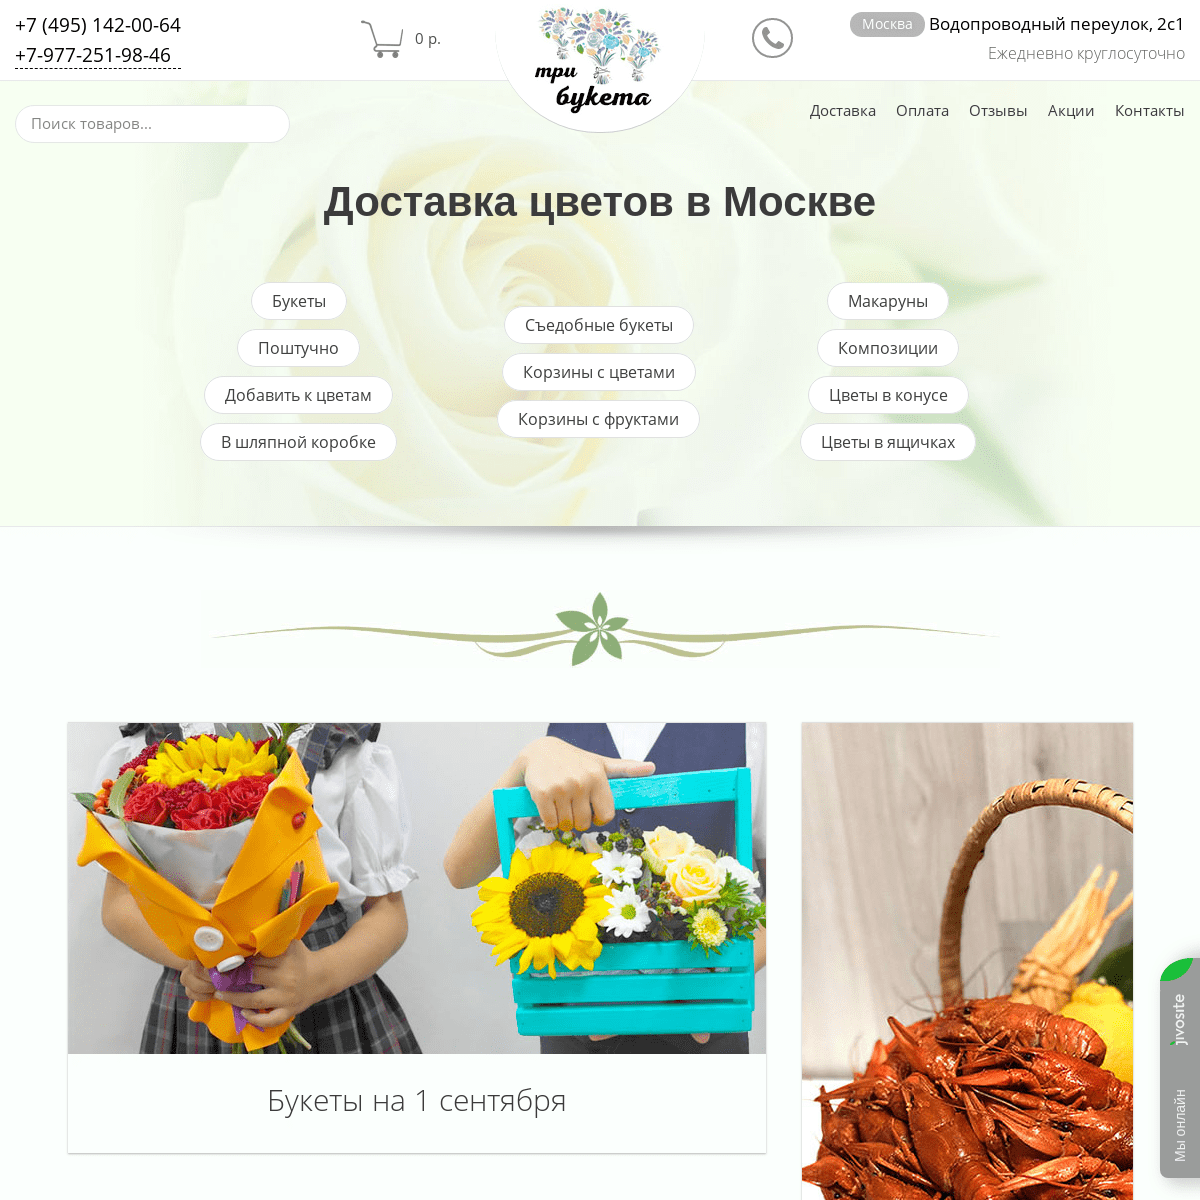 Доставка цветов в Москве, бесплатно от 4000 руб.